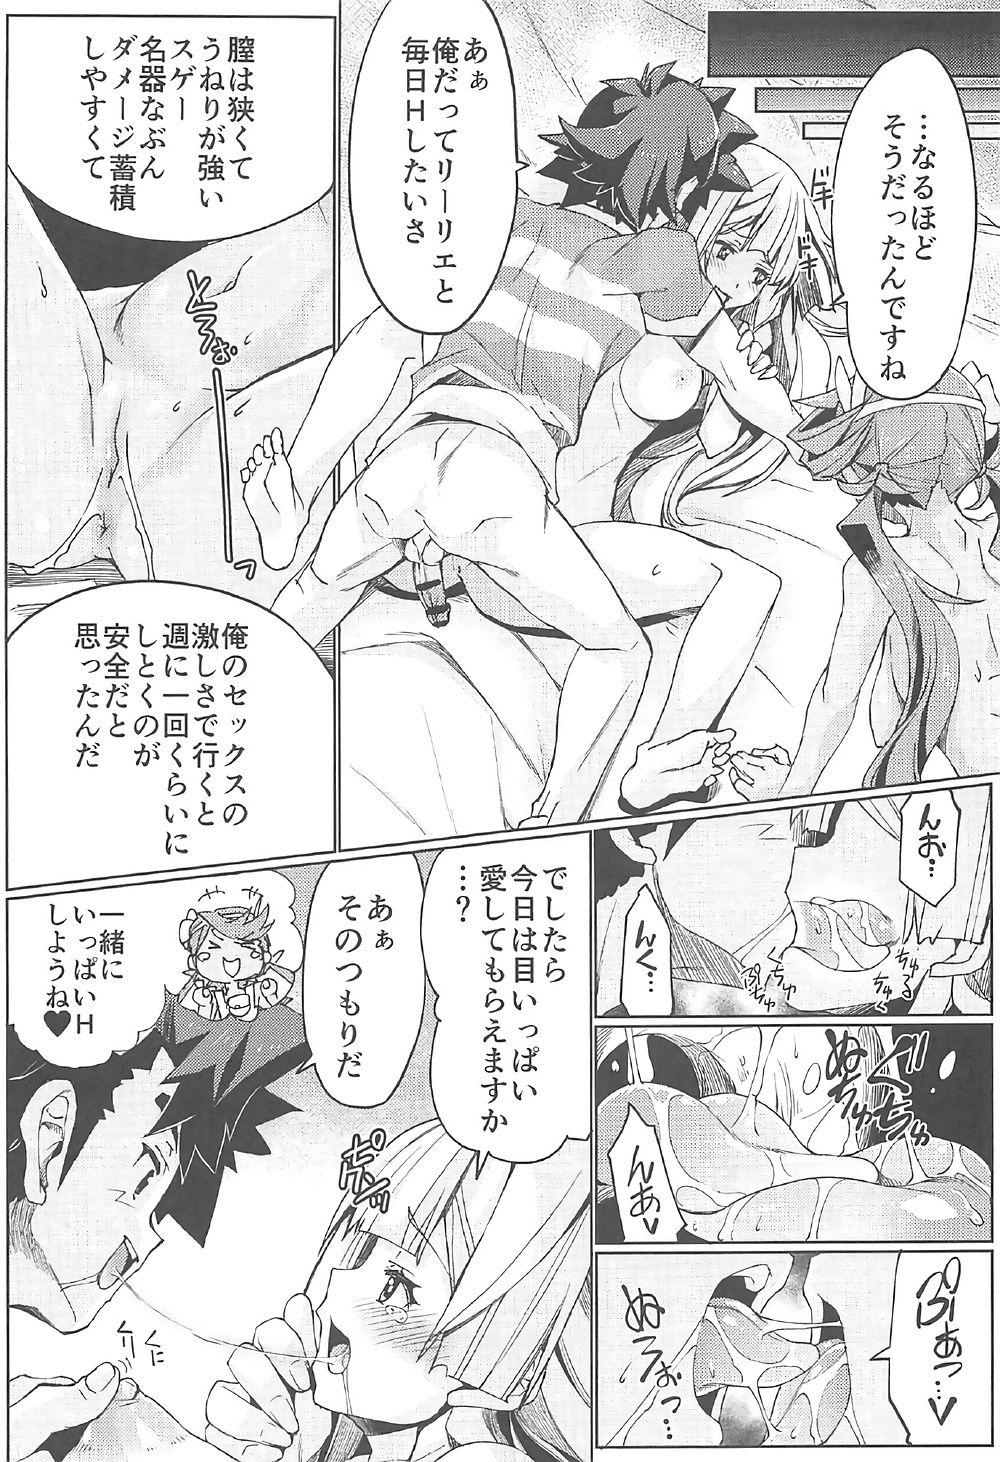 Money Watashi ga sono Ki ni nareba Ronriteki ni! 2!! - Pokemon Car - Page 10